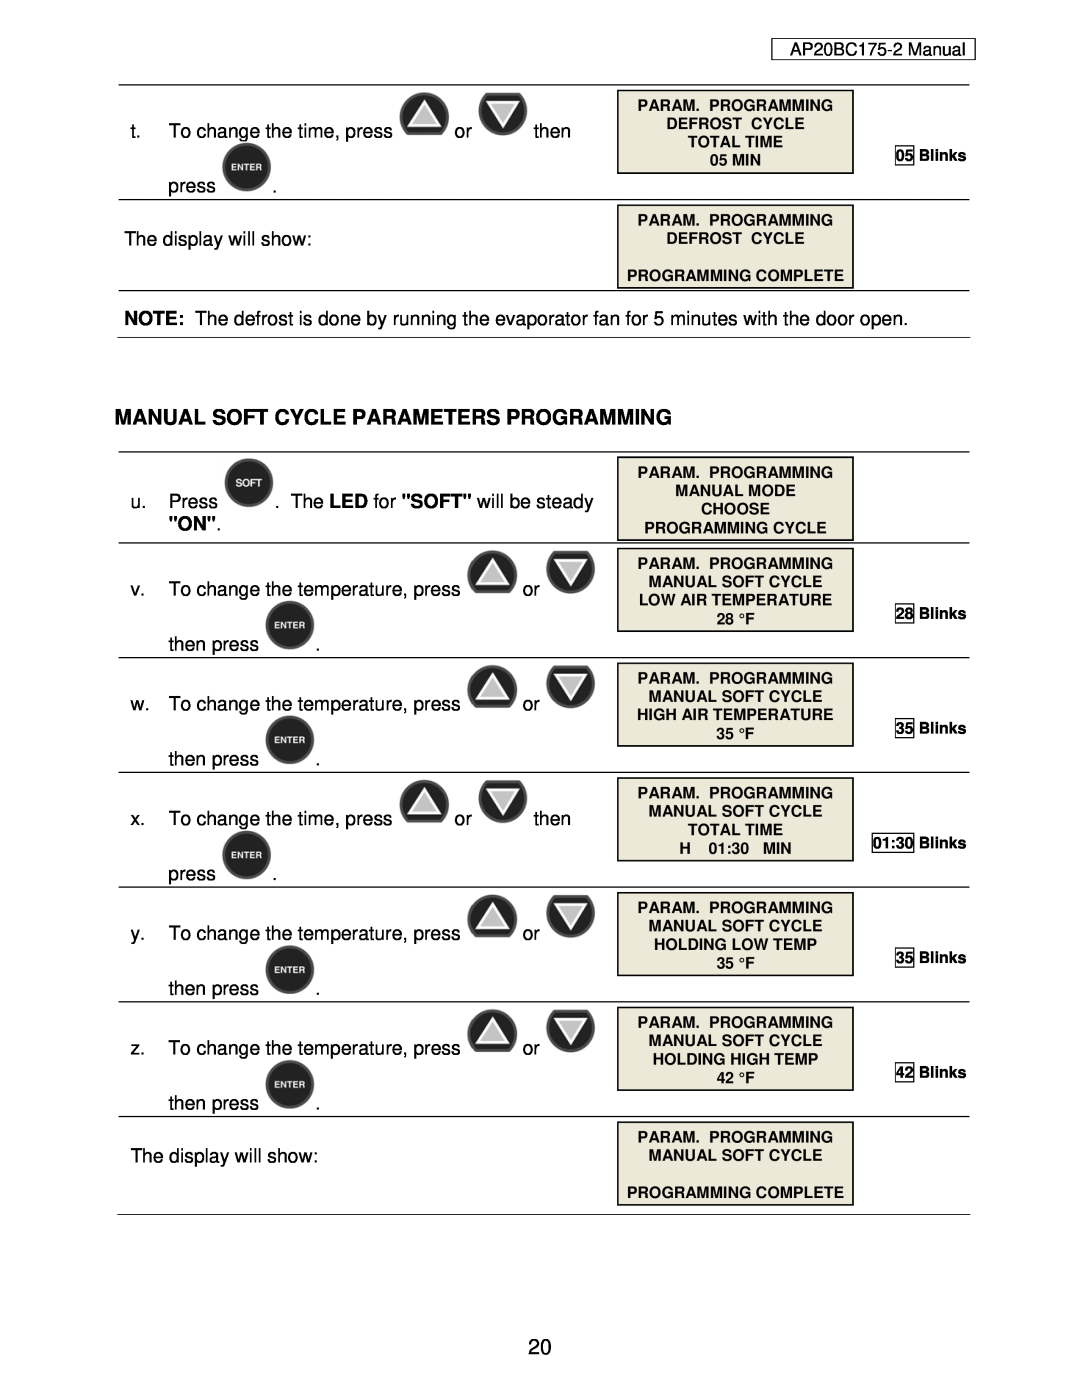 American Panel AP20BC175-2 user manual Manual Soft Cycle Parameters Programming 